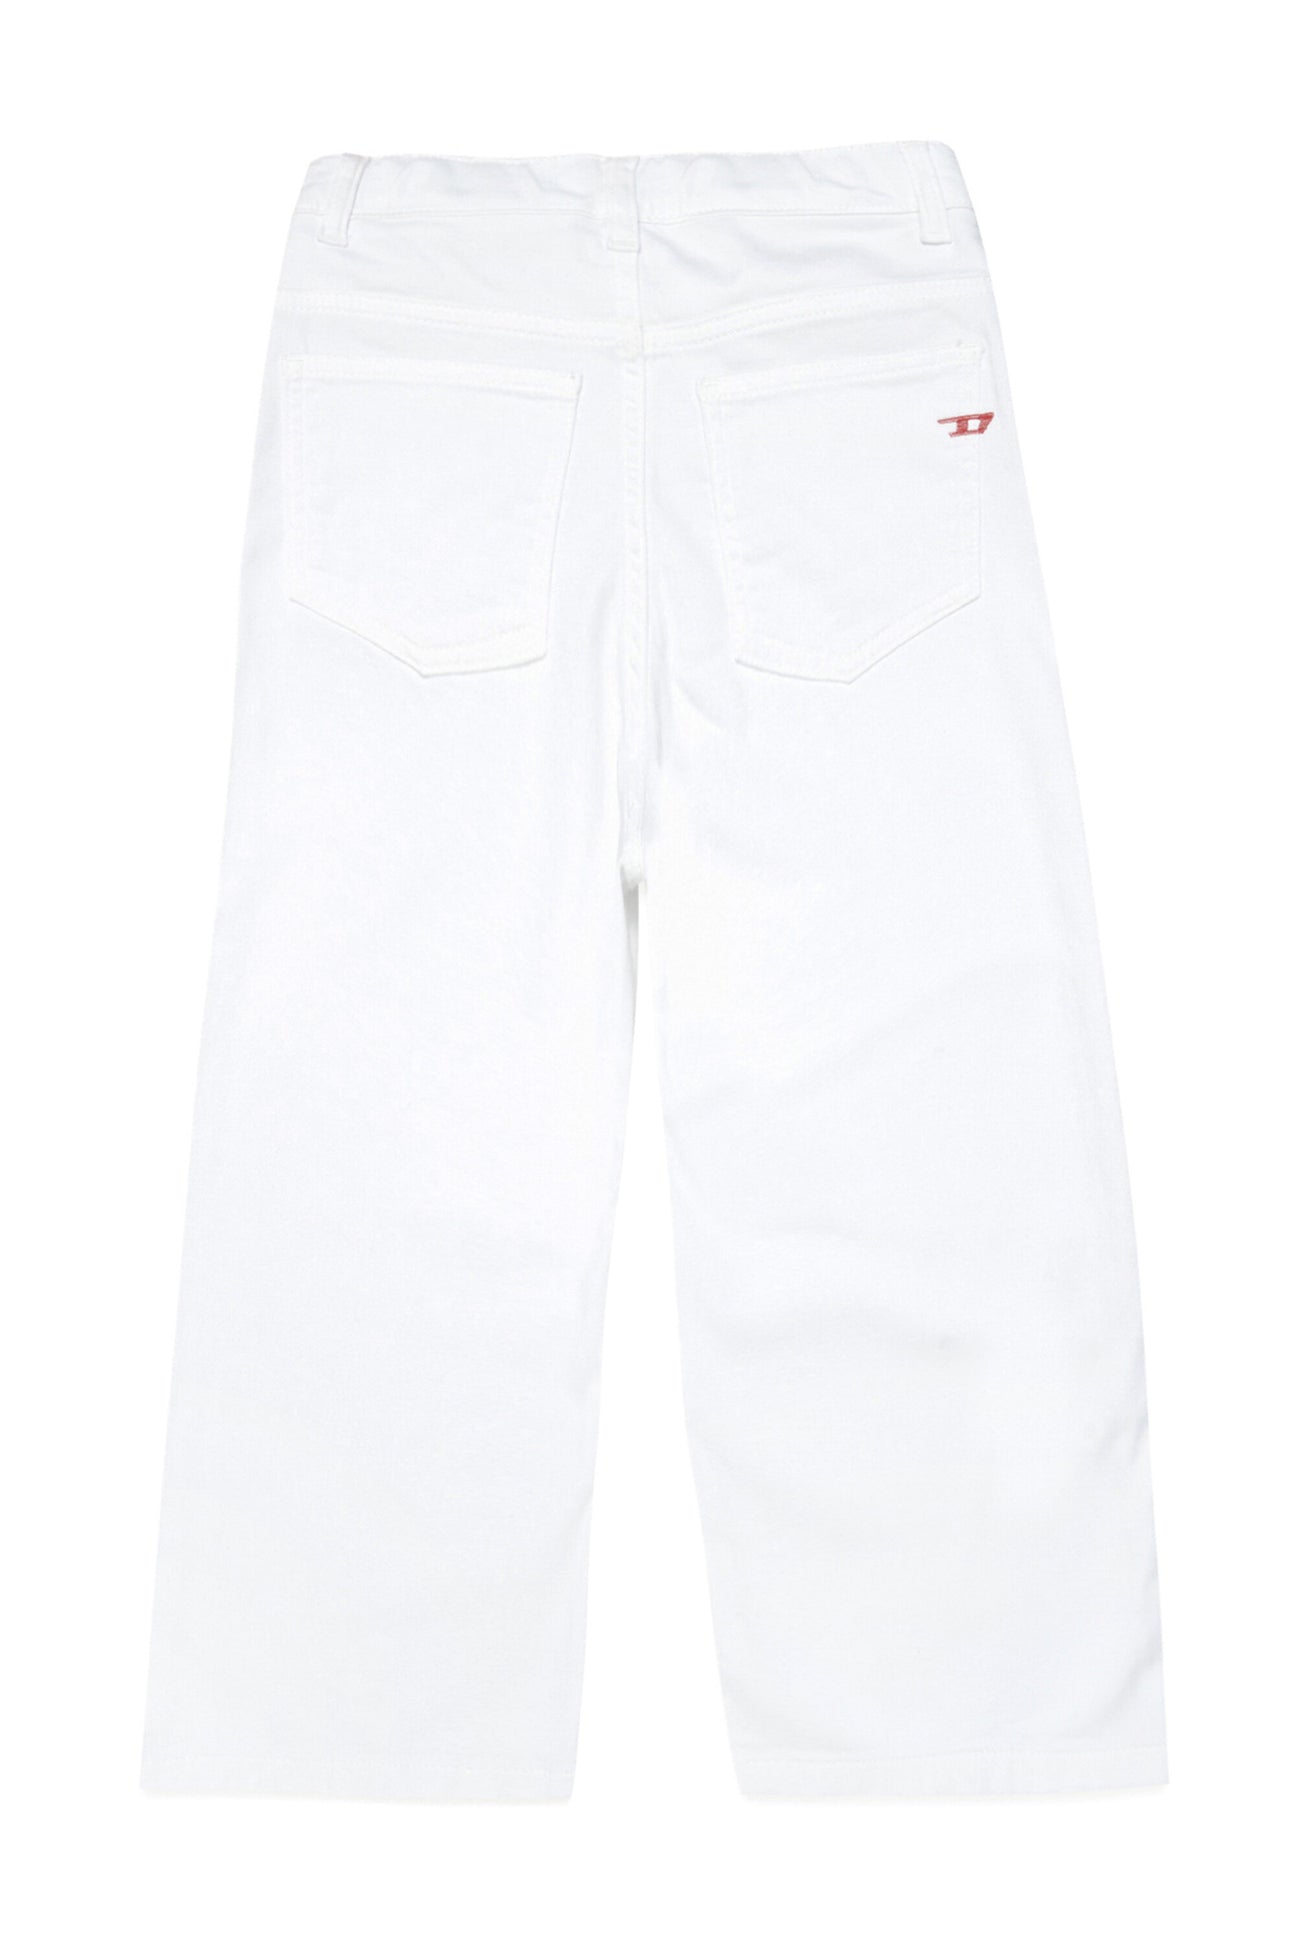 JoggJeans® 2000 Flare mid-rise white JoggJeans® 2000 Flare mid-rise white